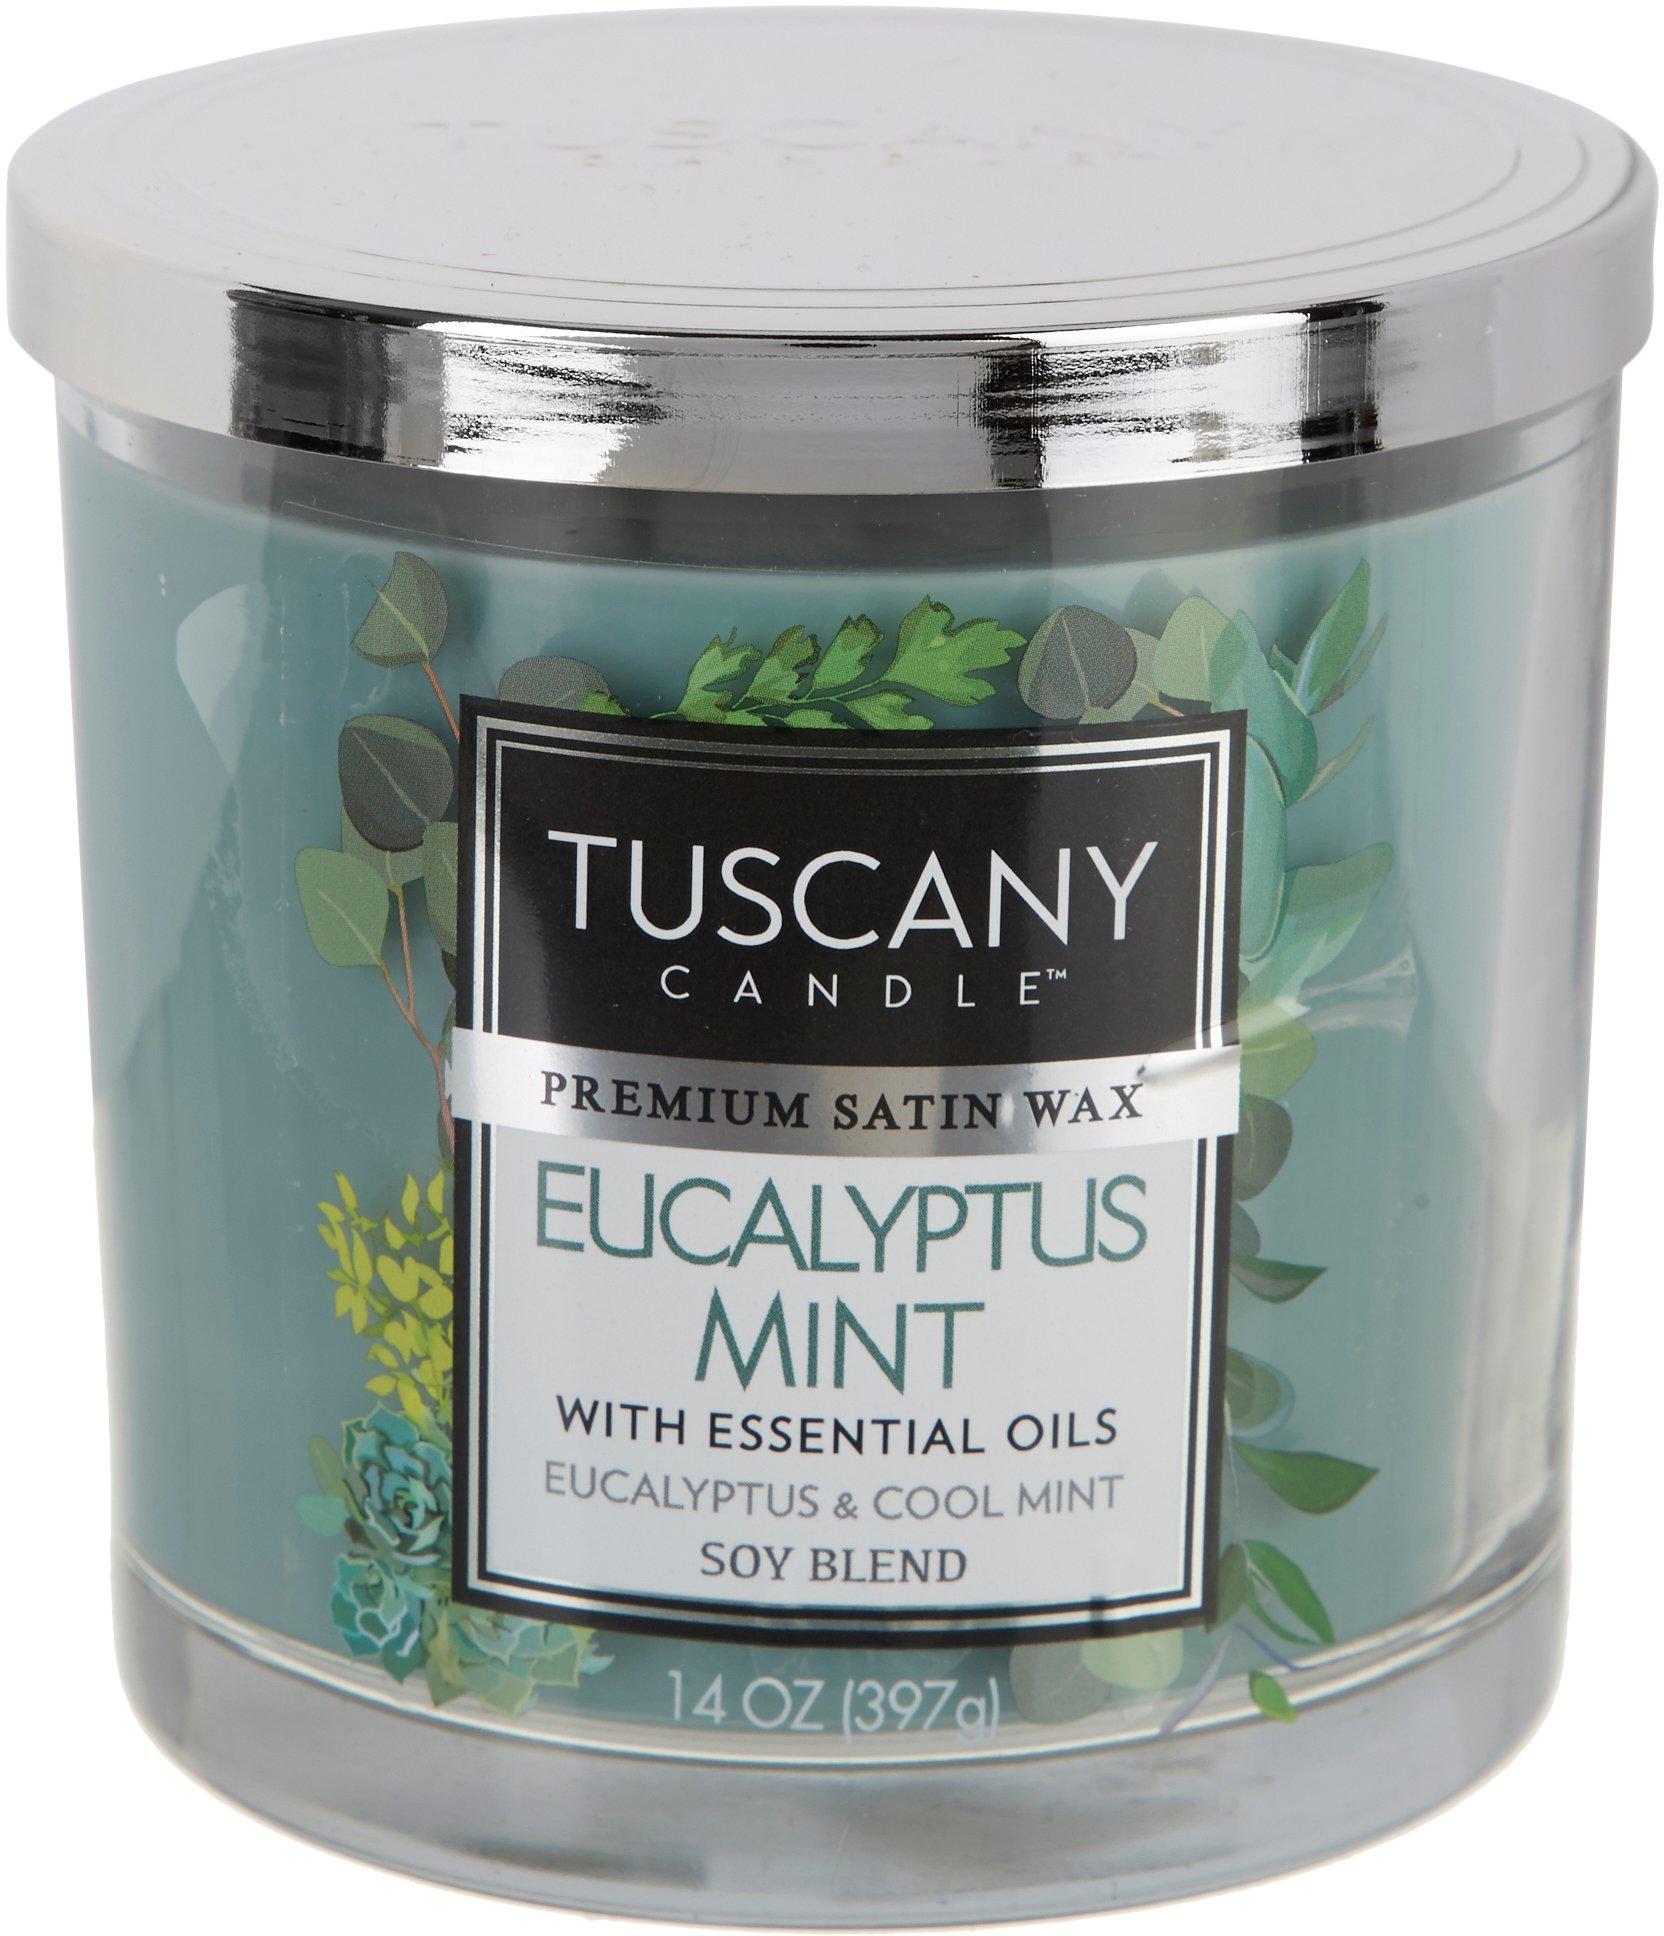 Tuscany 14 oz. Eucalyptus Mint Soy Blend Jar